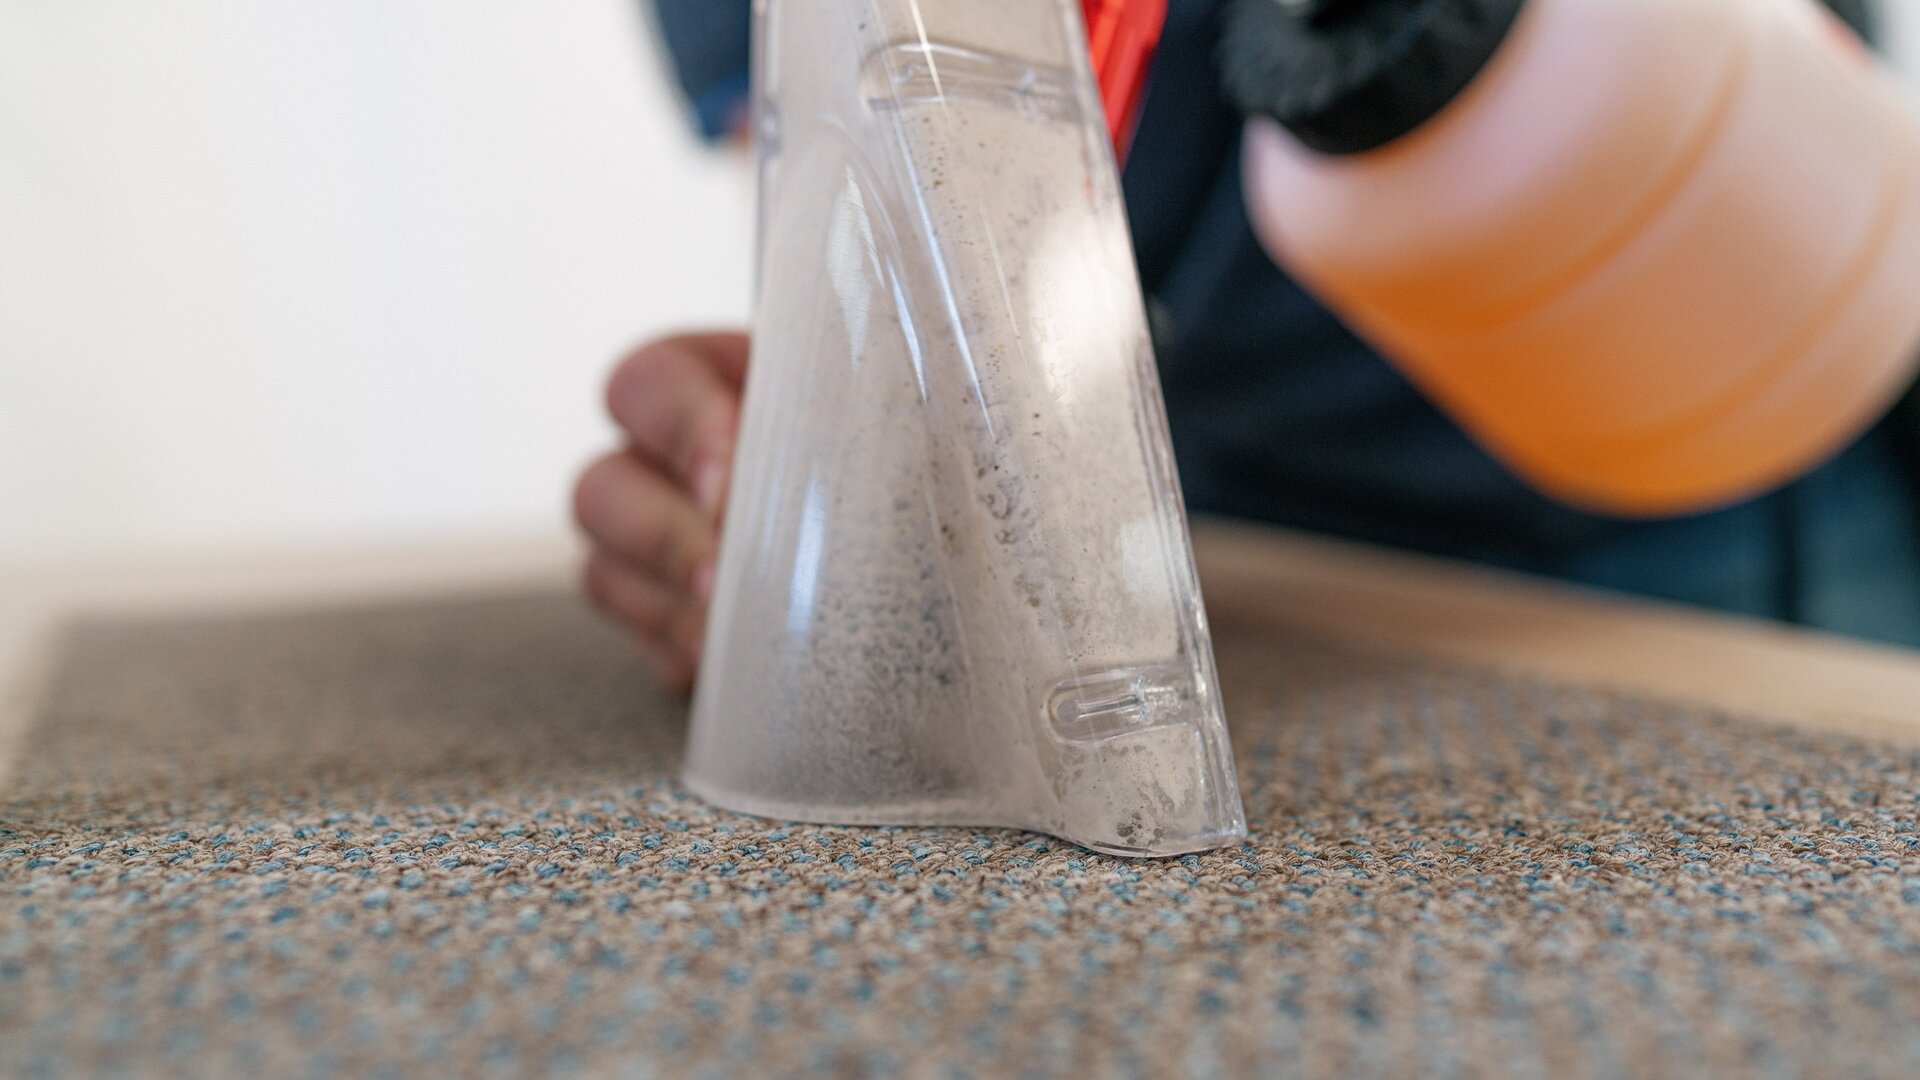 Påfyldning af en sprayflaske med et specielt rengøringsmiddel til indvendig rengøring af en HYMER autocamper